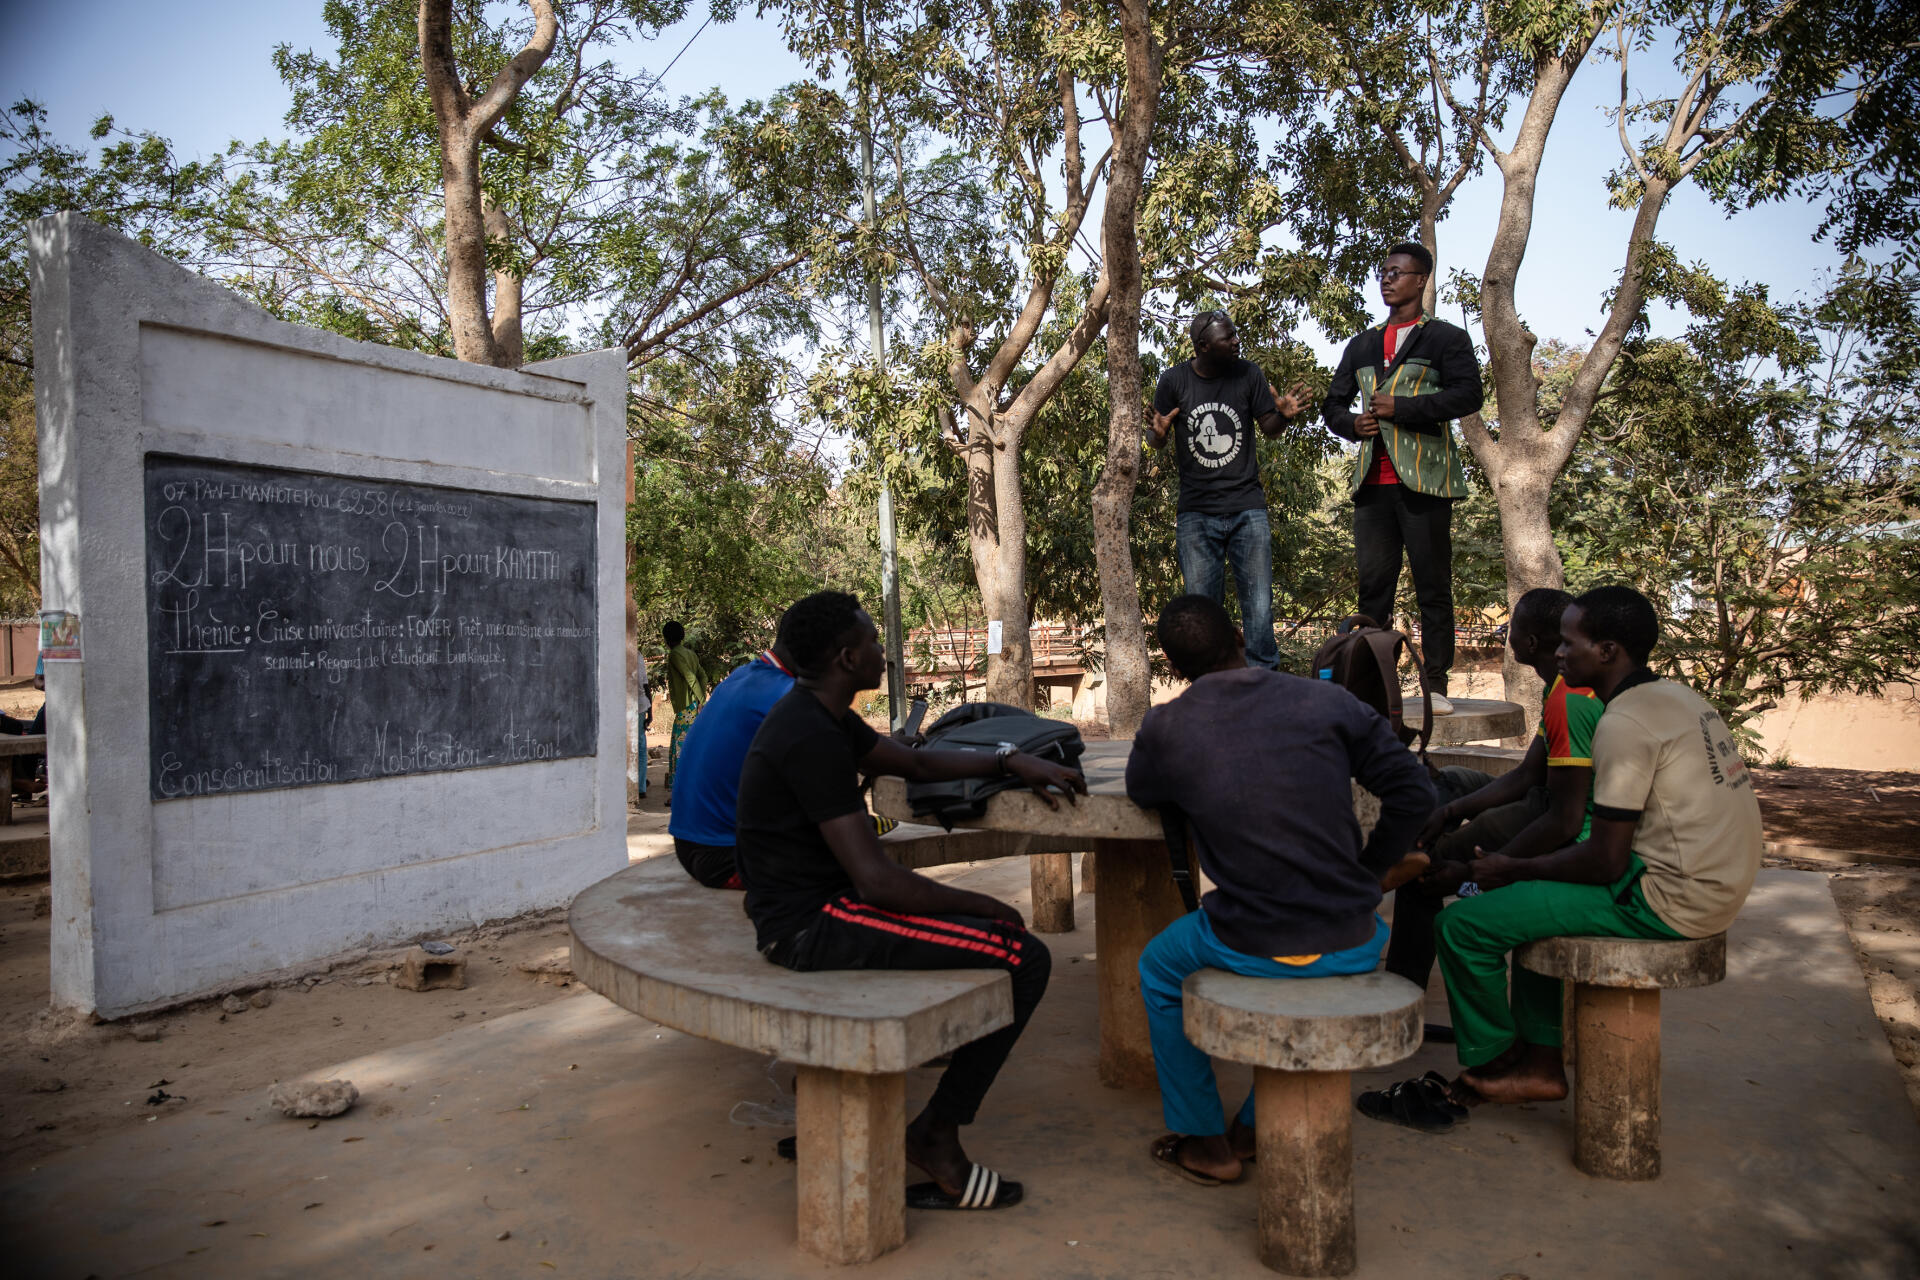 Le 21 janvier 2022, discussion sur les conséquences de la réforme LMD au Burkina Faso dans le cadre des débats quotidiens "Deux heures pour nous, deux heures pour Kamita" organisés sur le campus universitaire de Ouagadougou.